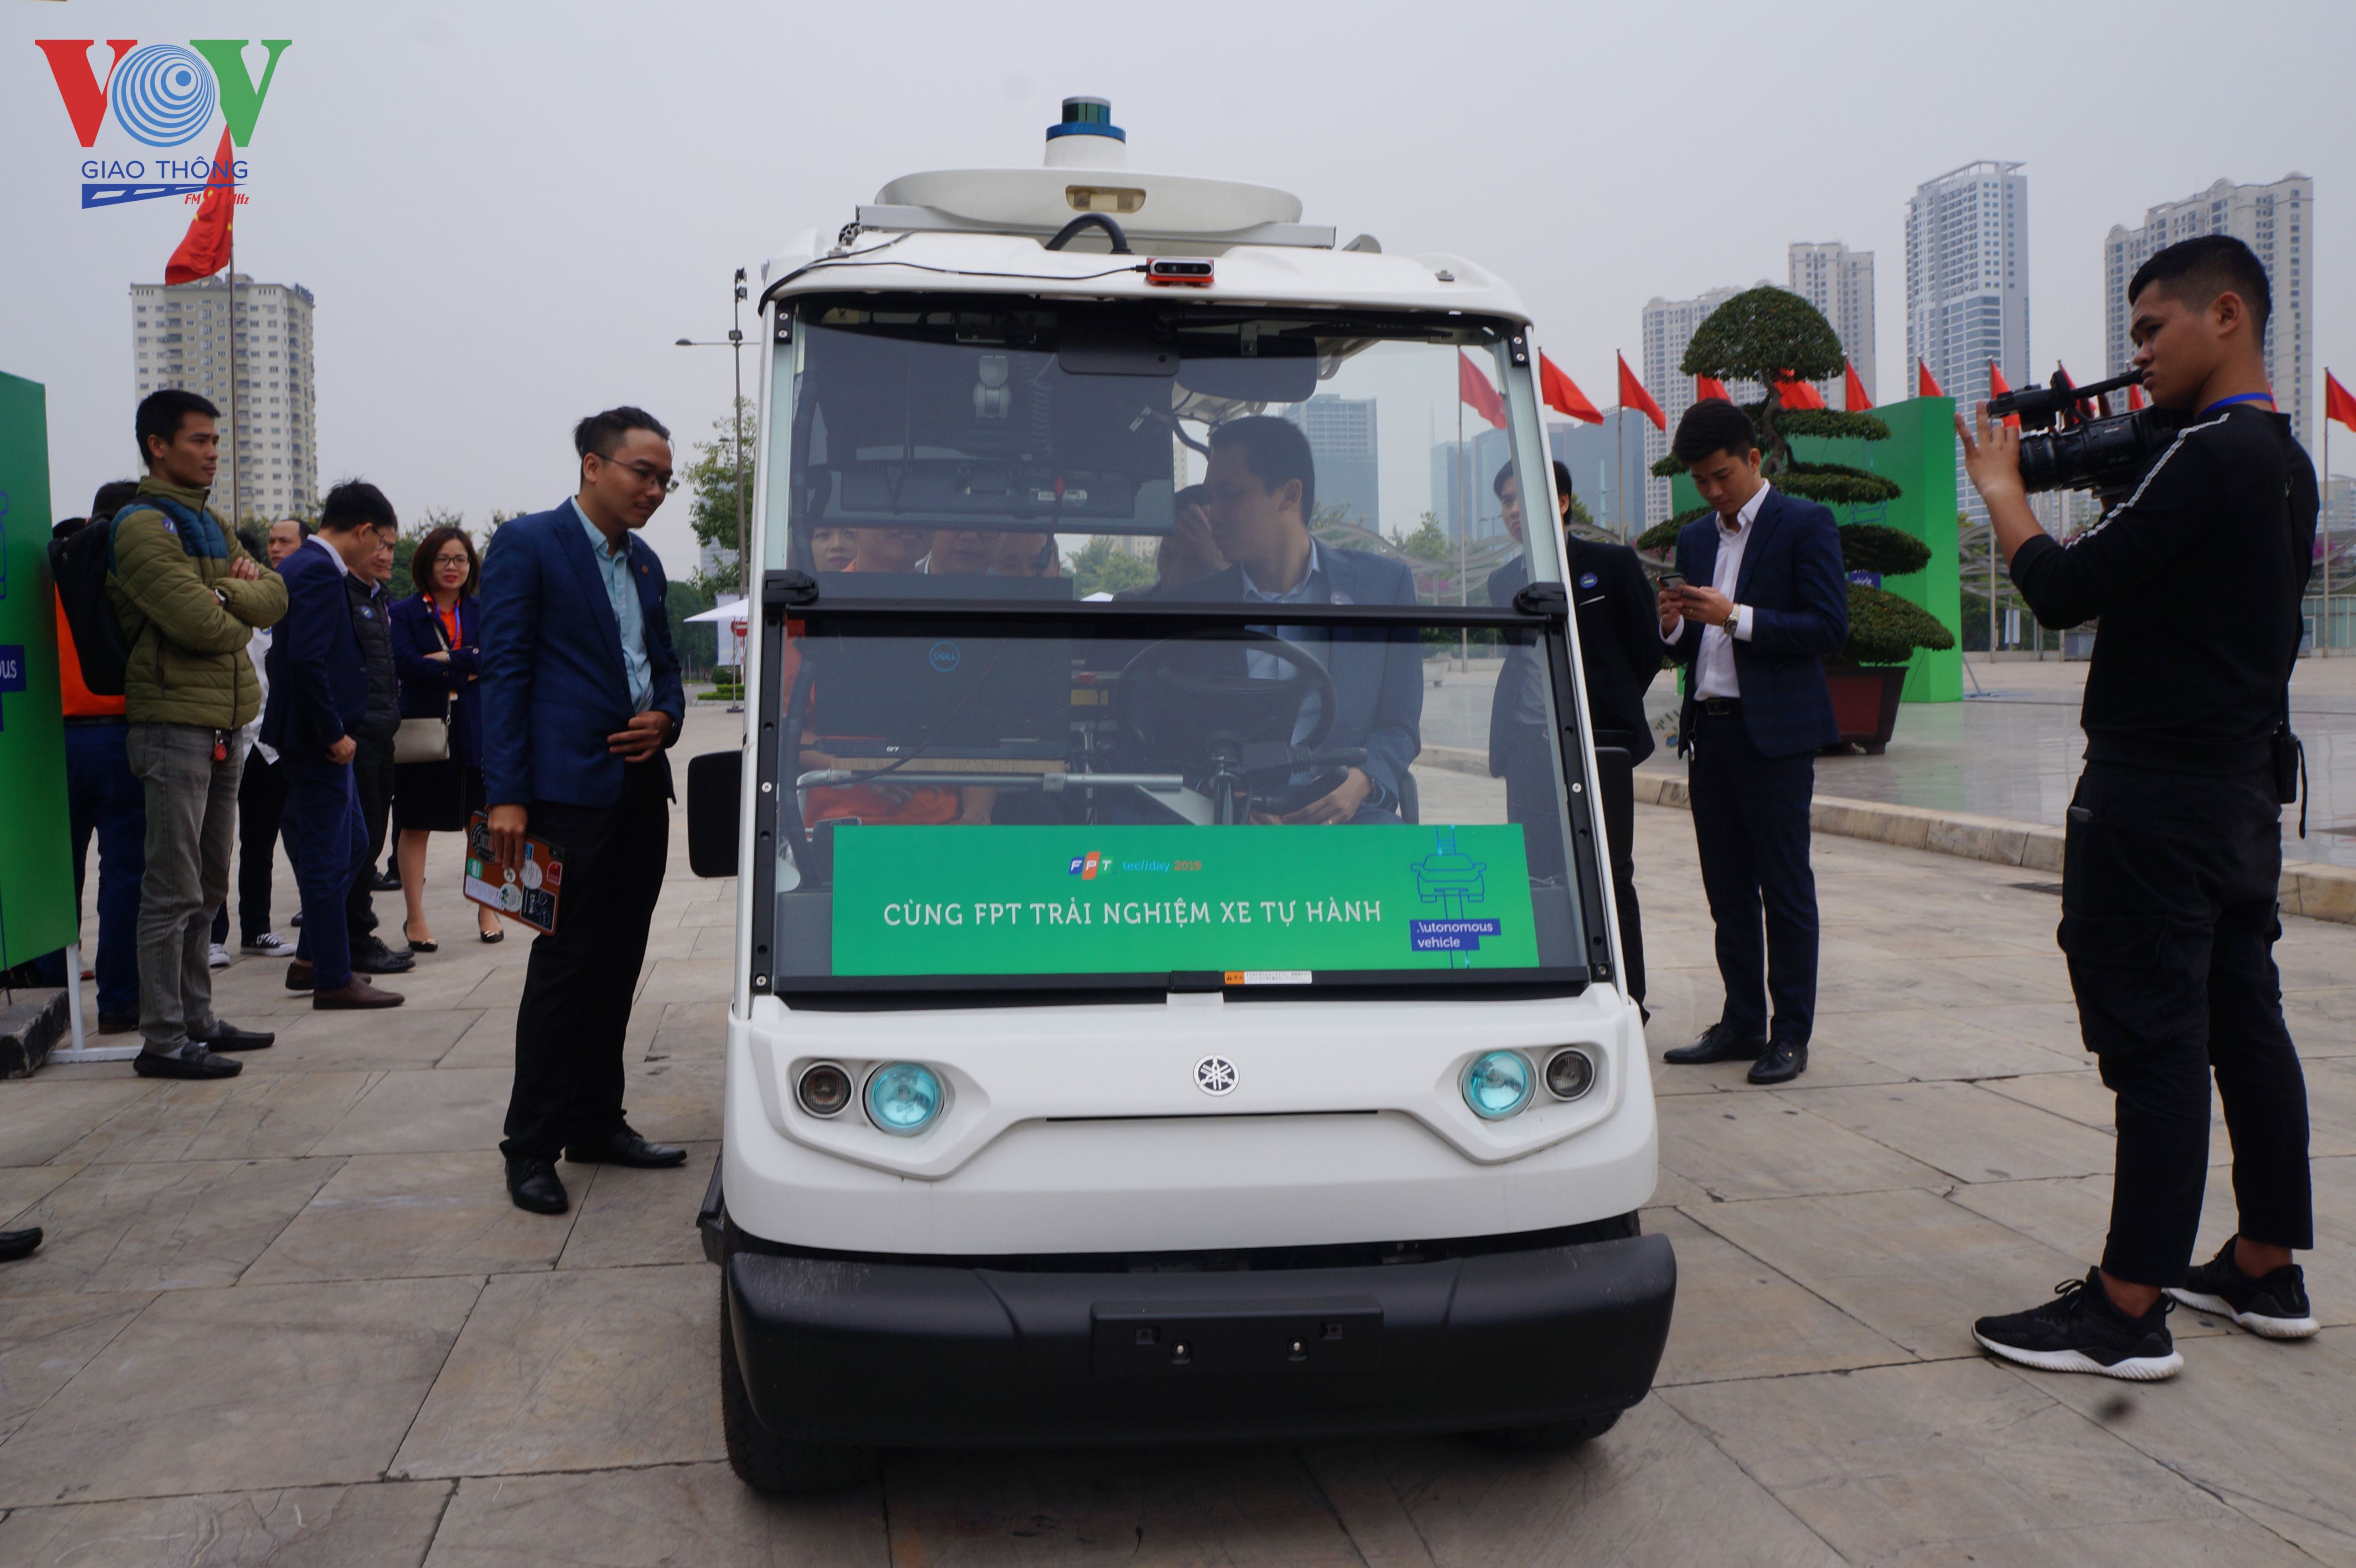 Xe tự hành công nghệ "made in Vietnam" là một trong những điểm nhấn tại sự kiện FPT Techday 2019 diễn ra sáng nay tại Hà Nội